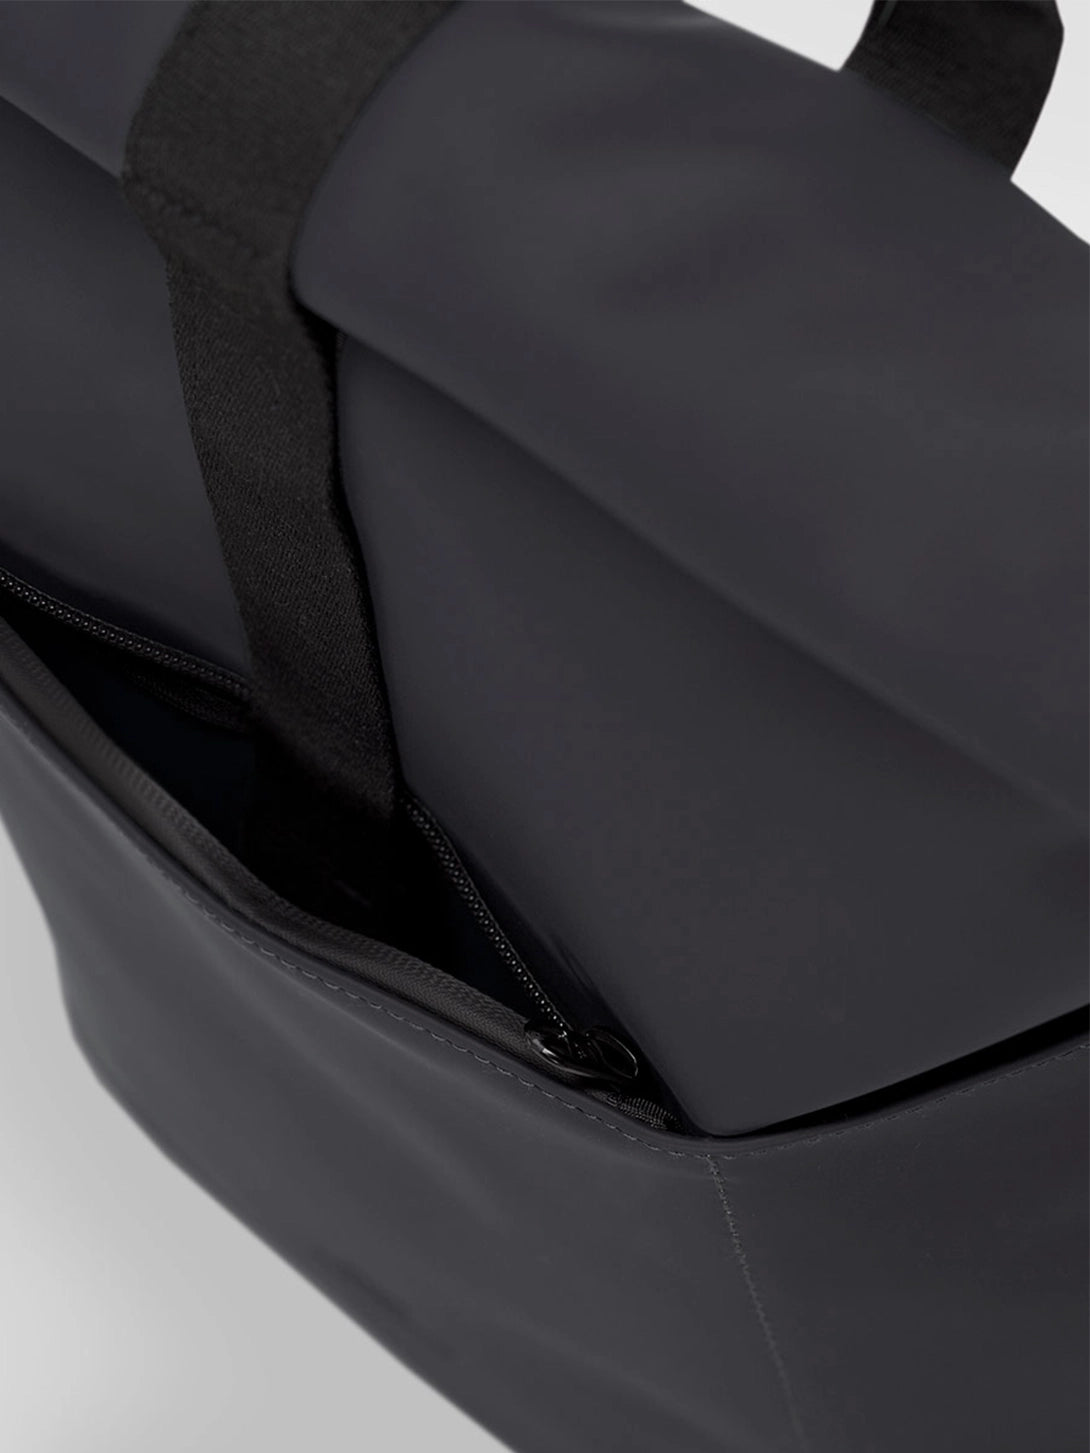 Black Hajo Mini Ucon Backpack